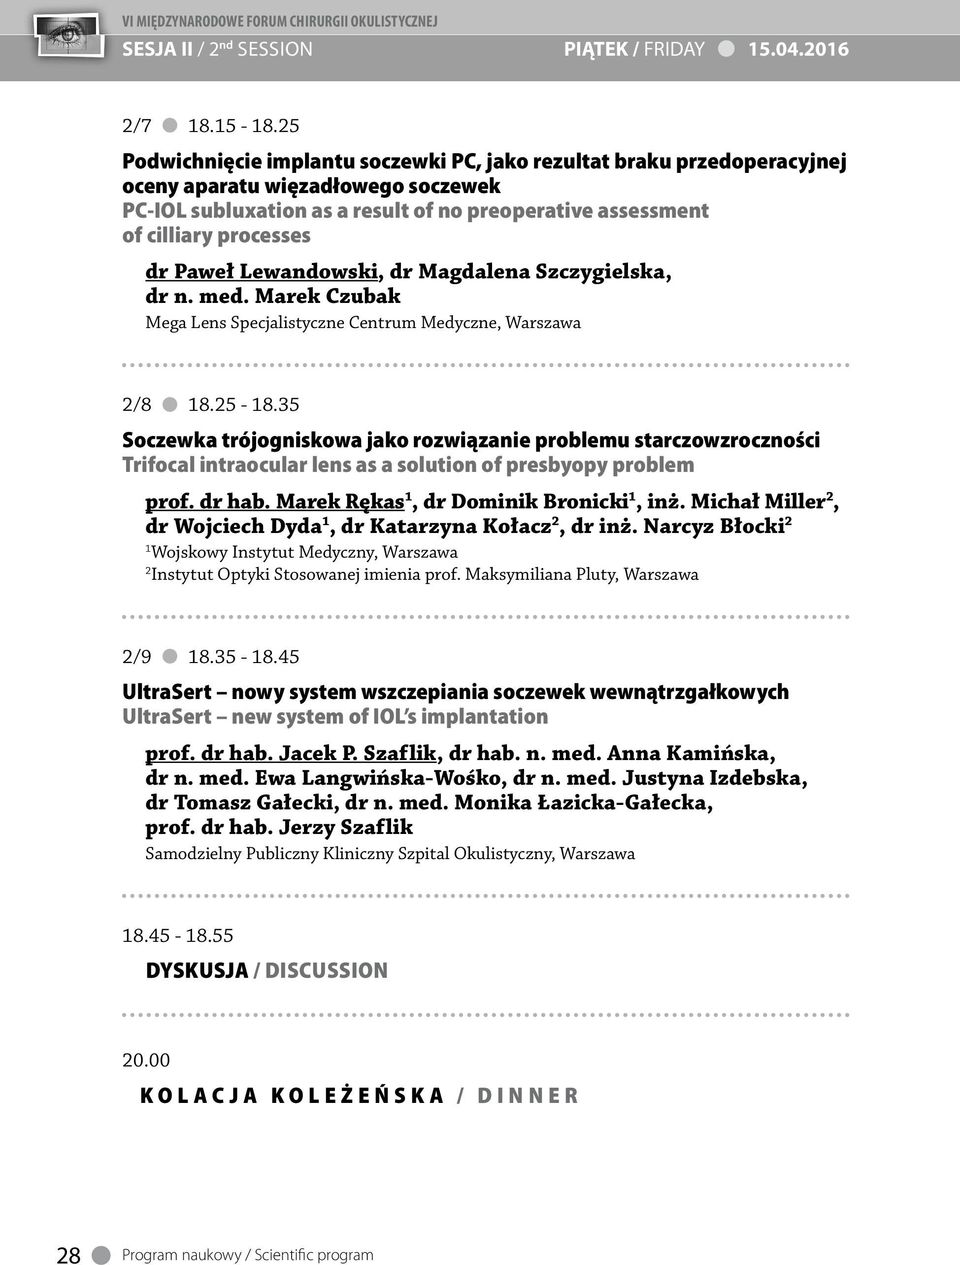 Paweł Lewandowski, dr Magdalena Szczygielska, dr n. med. Marek Czubak Mega Lens Specjalistyczne Centrum Medyczne, Warszawa /8 8.5-8.